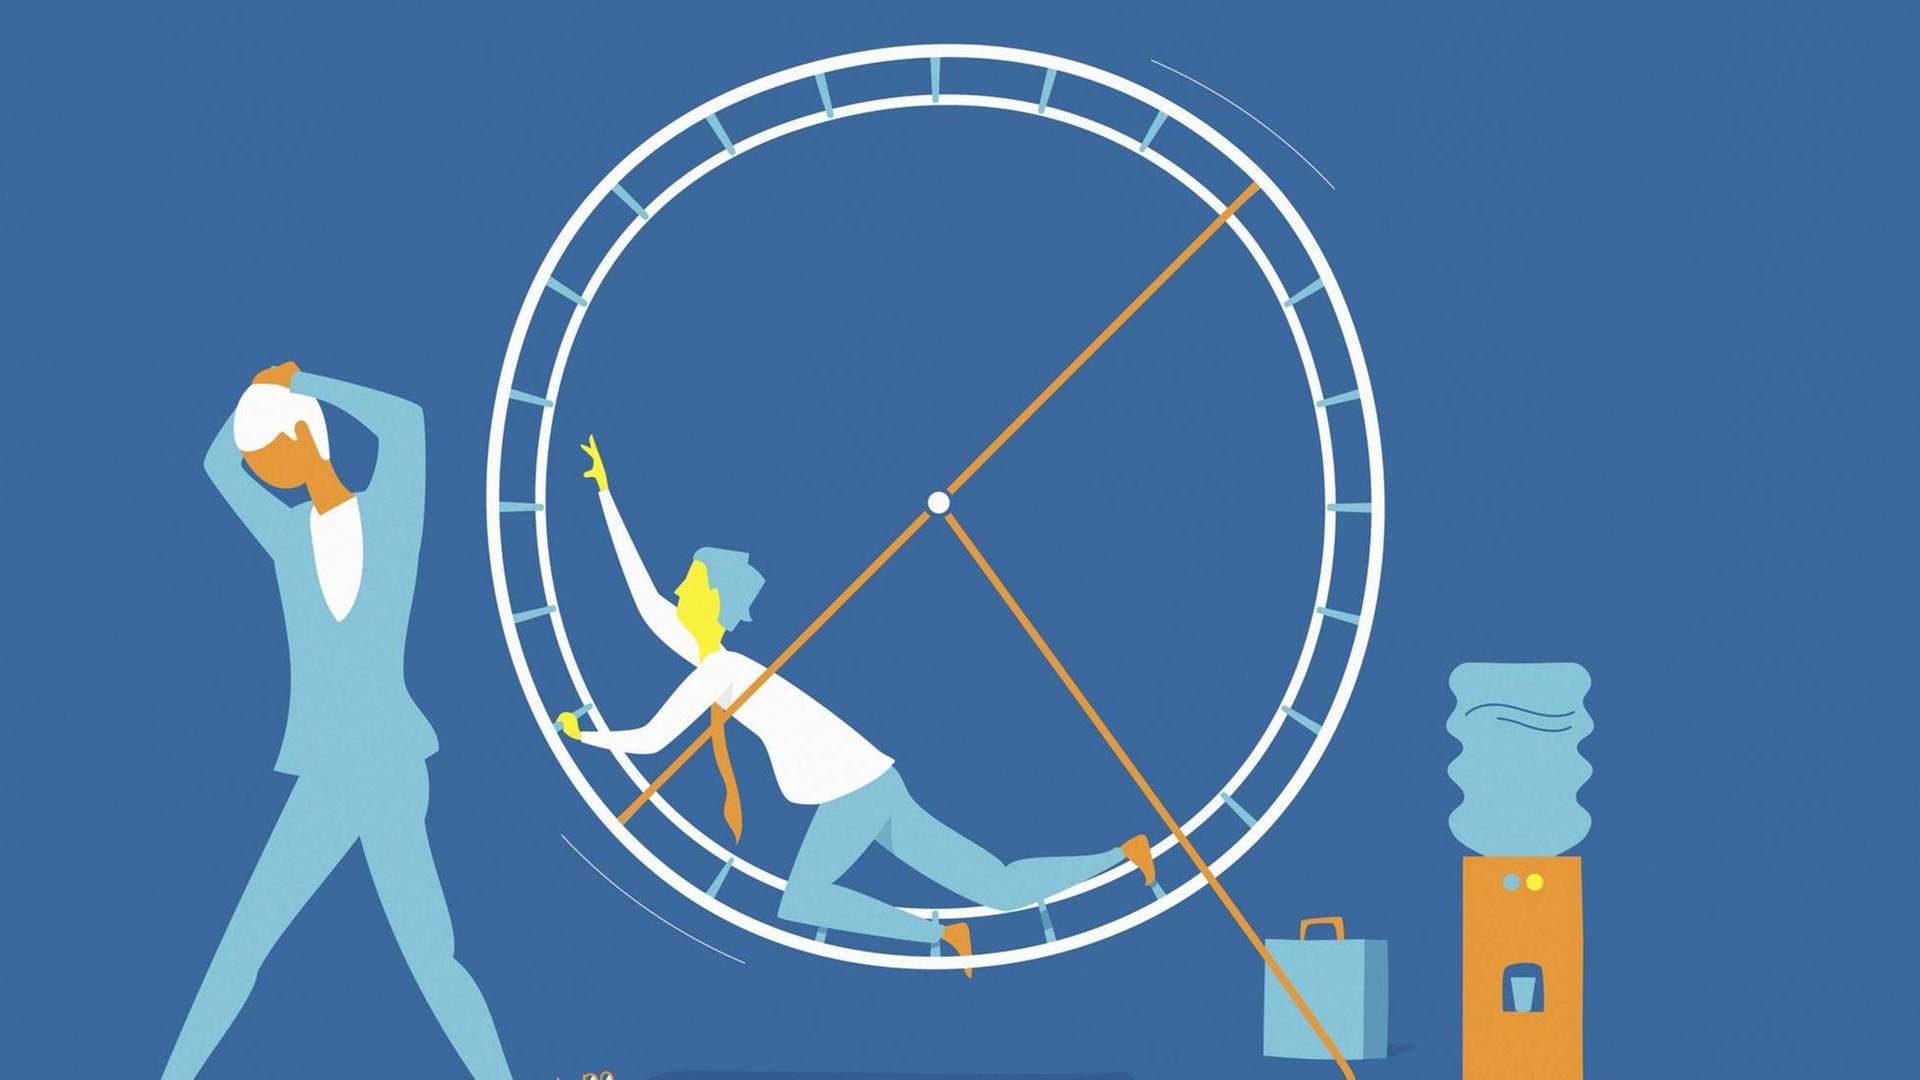 Abstrakte Illustration auf blauem Grund eines Büroangestellten, der sich in einem Hamsterrad abmüht, während eine Kollegin vor Stress die Segel streicht.